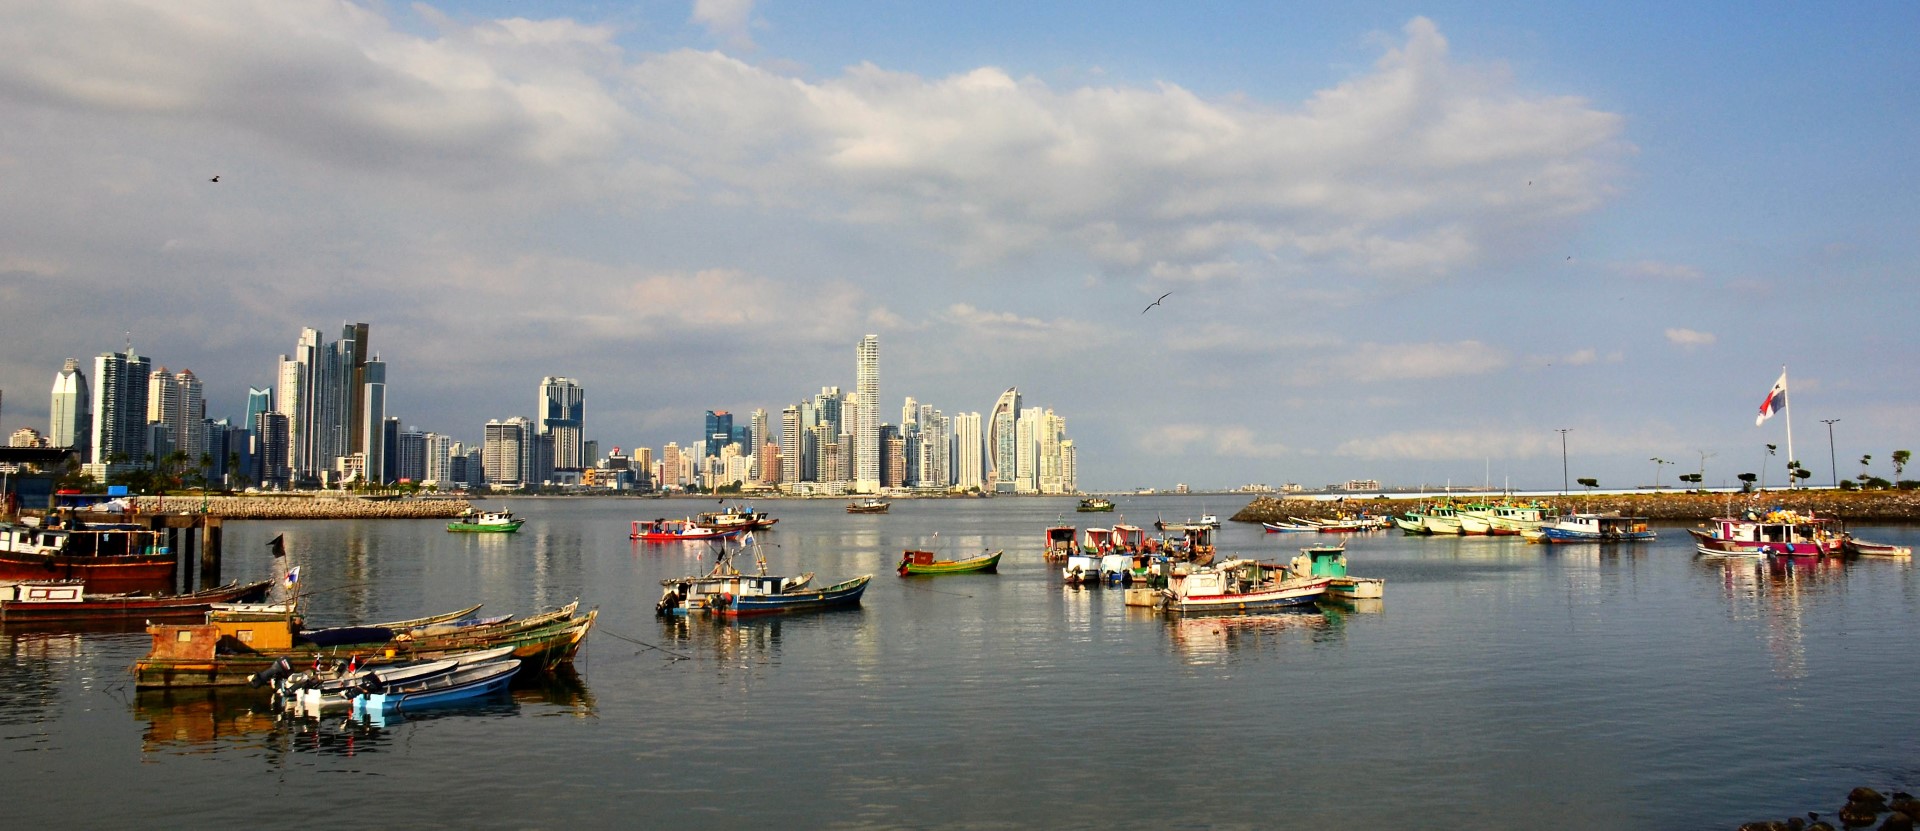 Fotografeer de skyline van Panama City tijdens een Combinatiereis Panama en Costa Rica